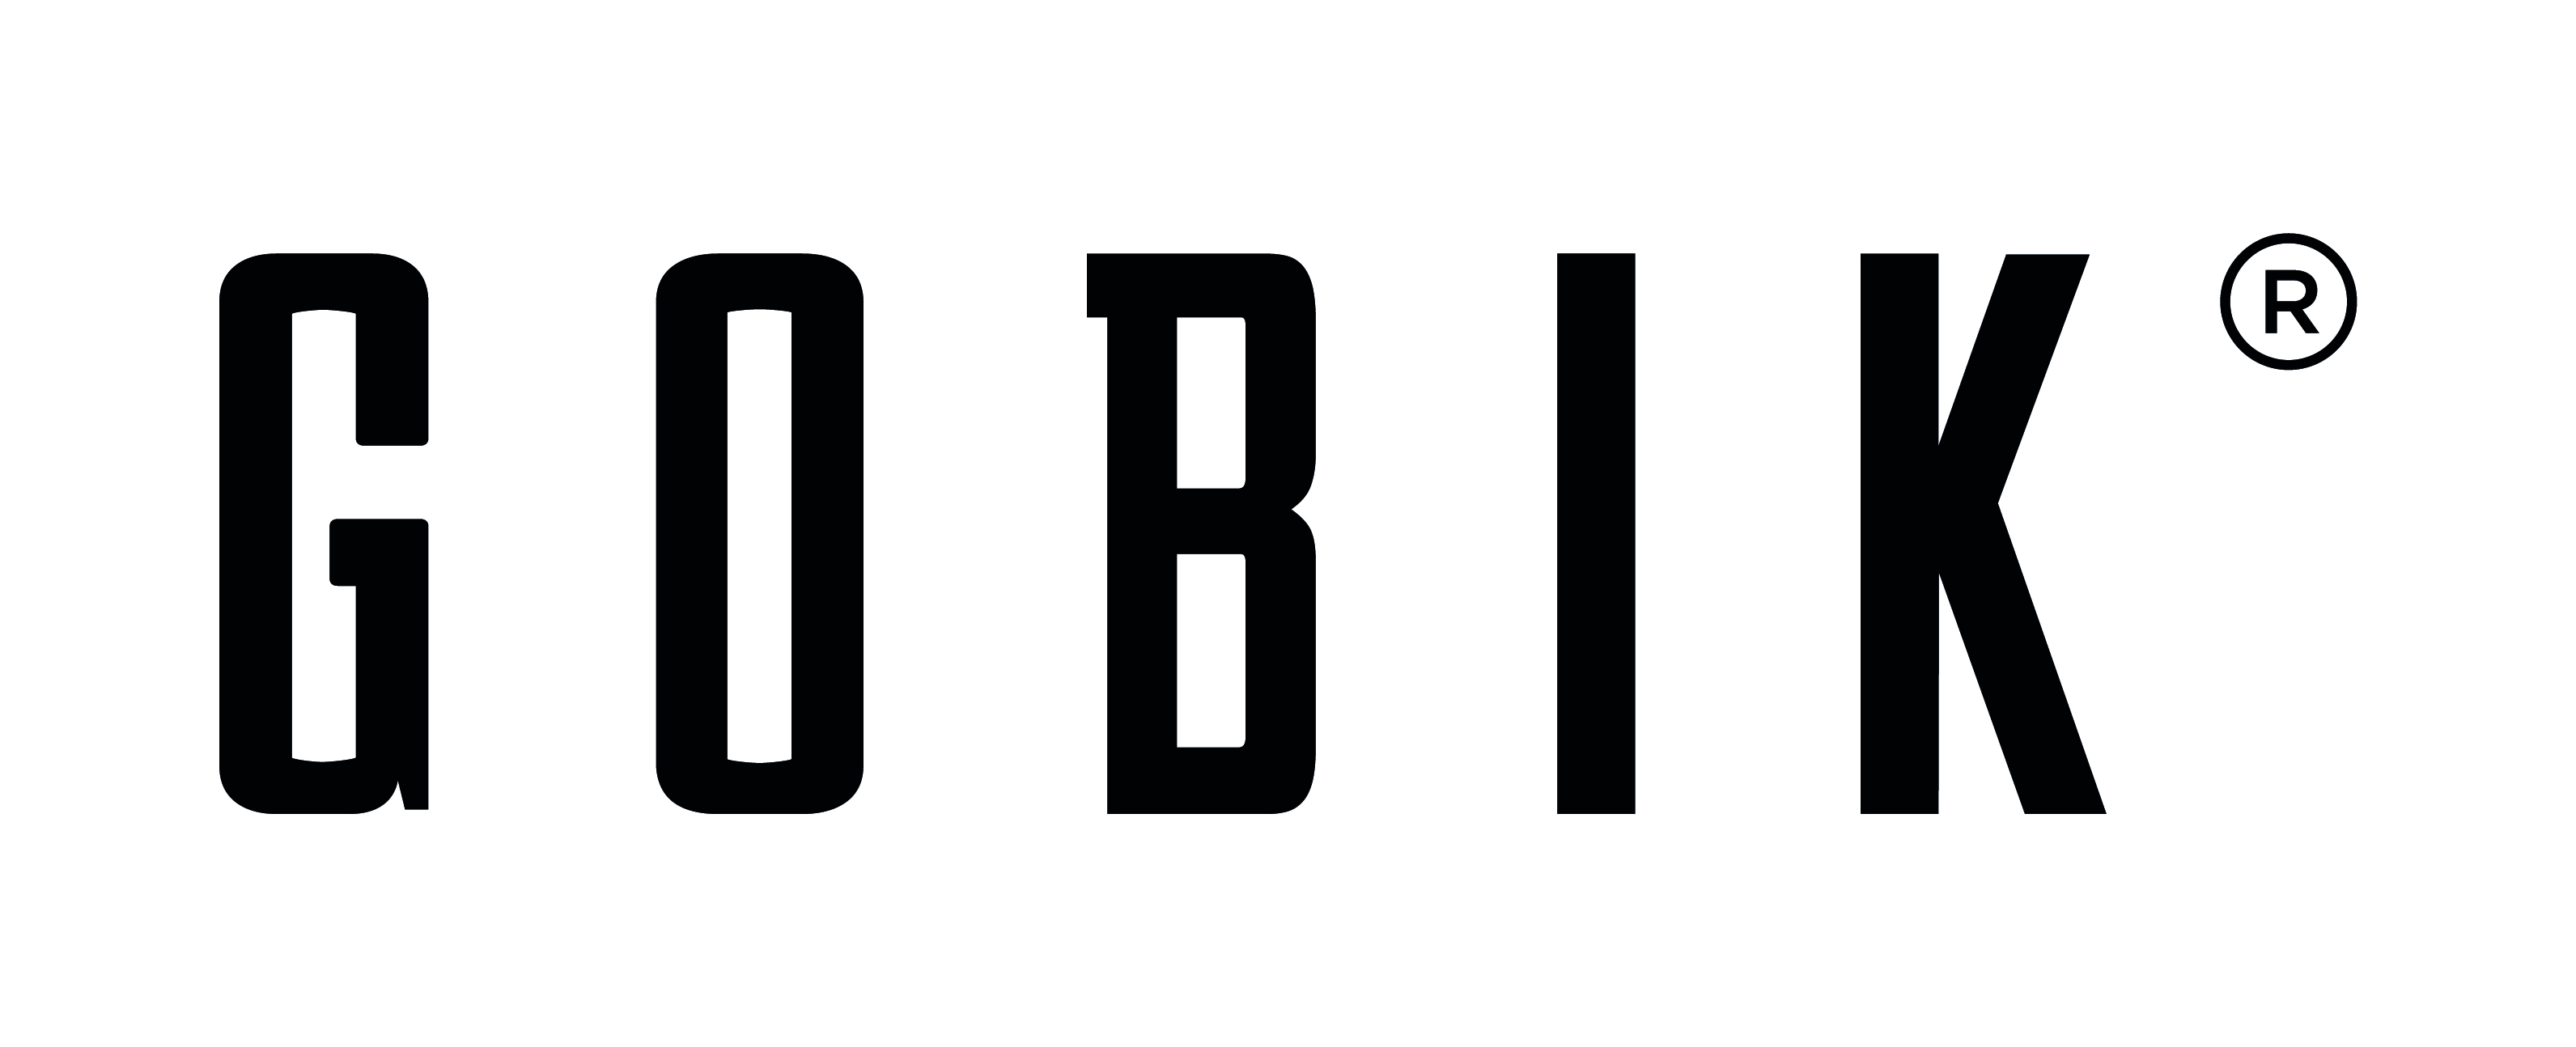 Gobik logo